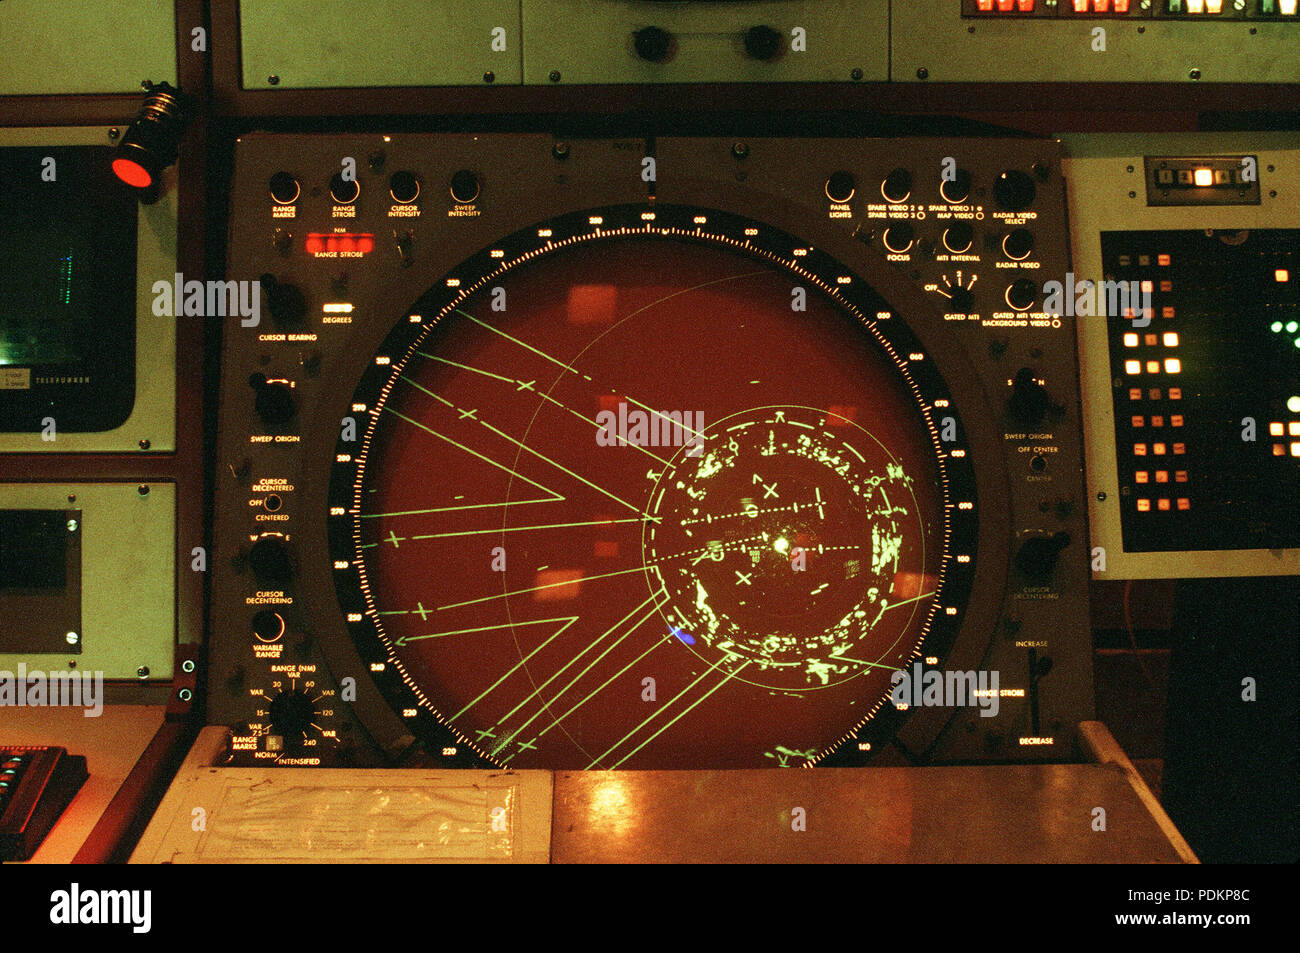 Une vue rapprochée de l'affichage radar courte portée à l'intérieur de l'Air Route Traffic Control Berlin Installation à l'aéroport Central Templehof. Le mécanisme est géré par les membres de l'Escadron des systèmes d'information 1946th. Banque D'Images